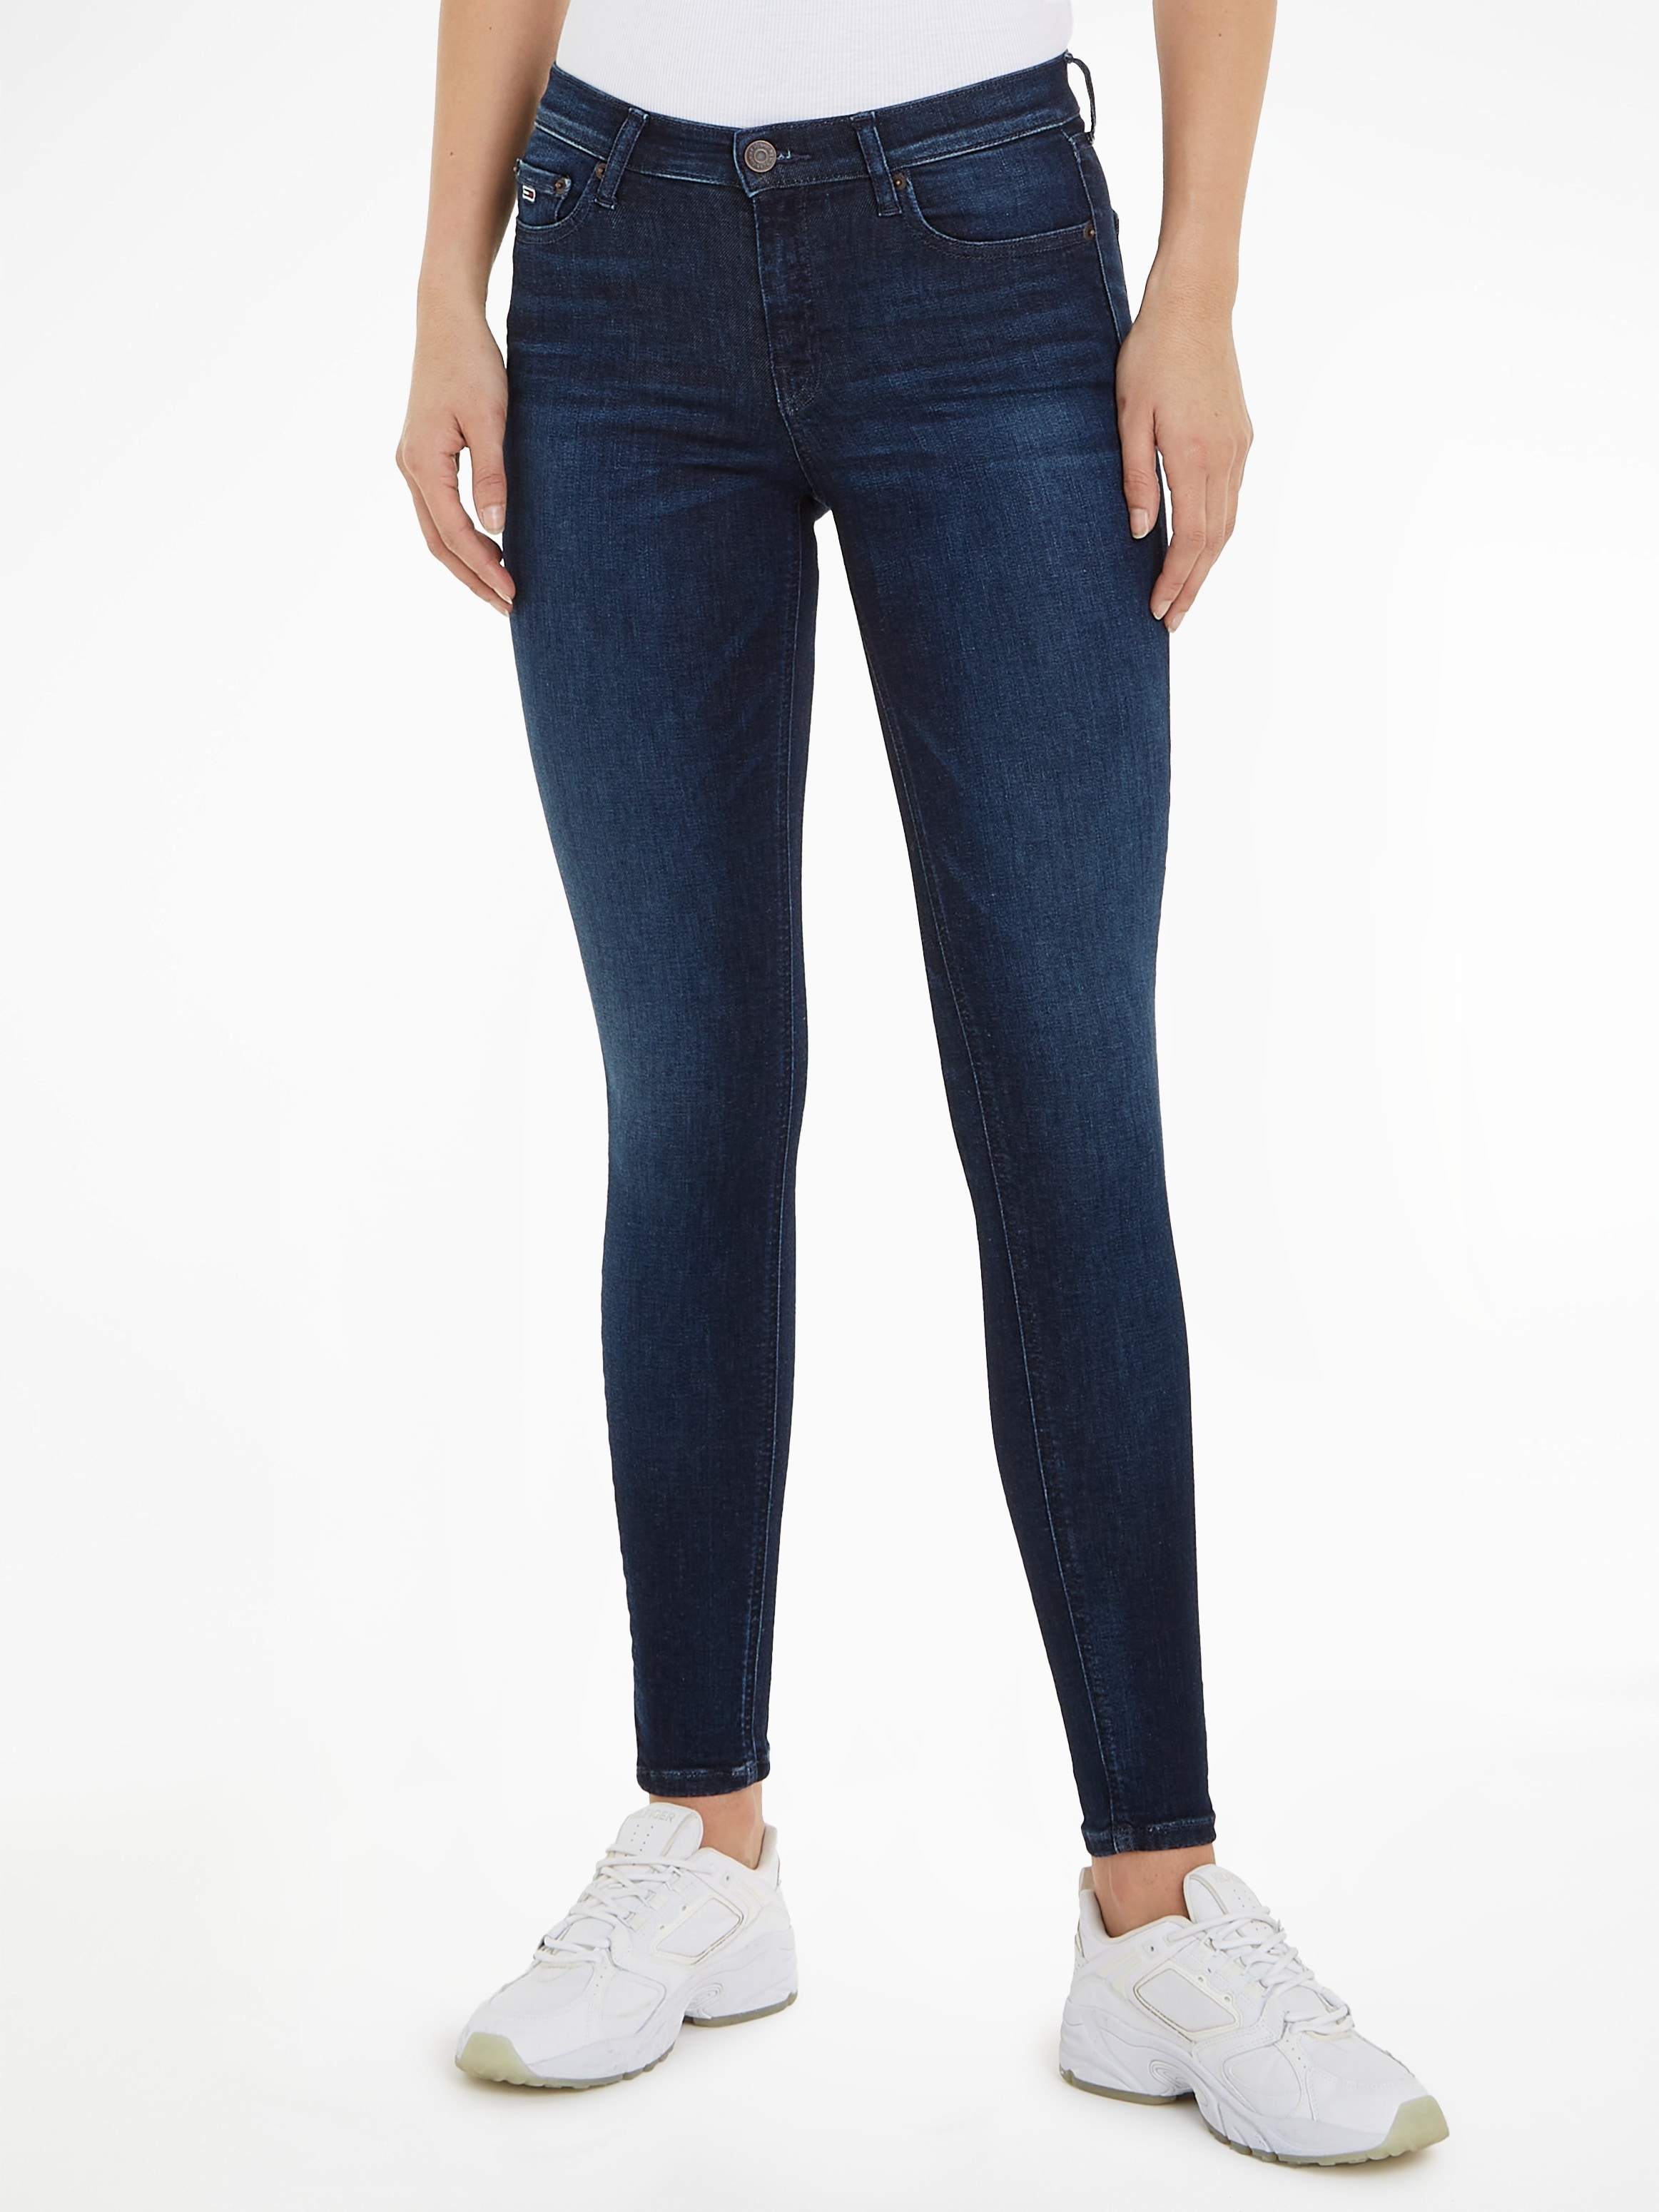 Jeans »Nora«, bei Jeans Ledermarkenlabel Tommy kaufen Bequeme mit OTTO